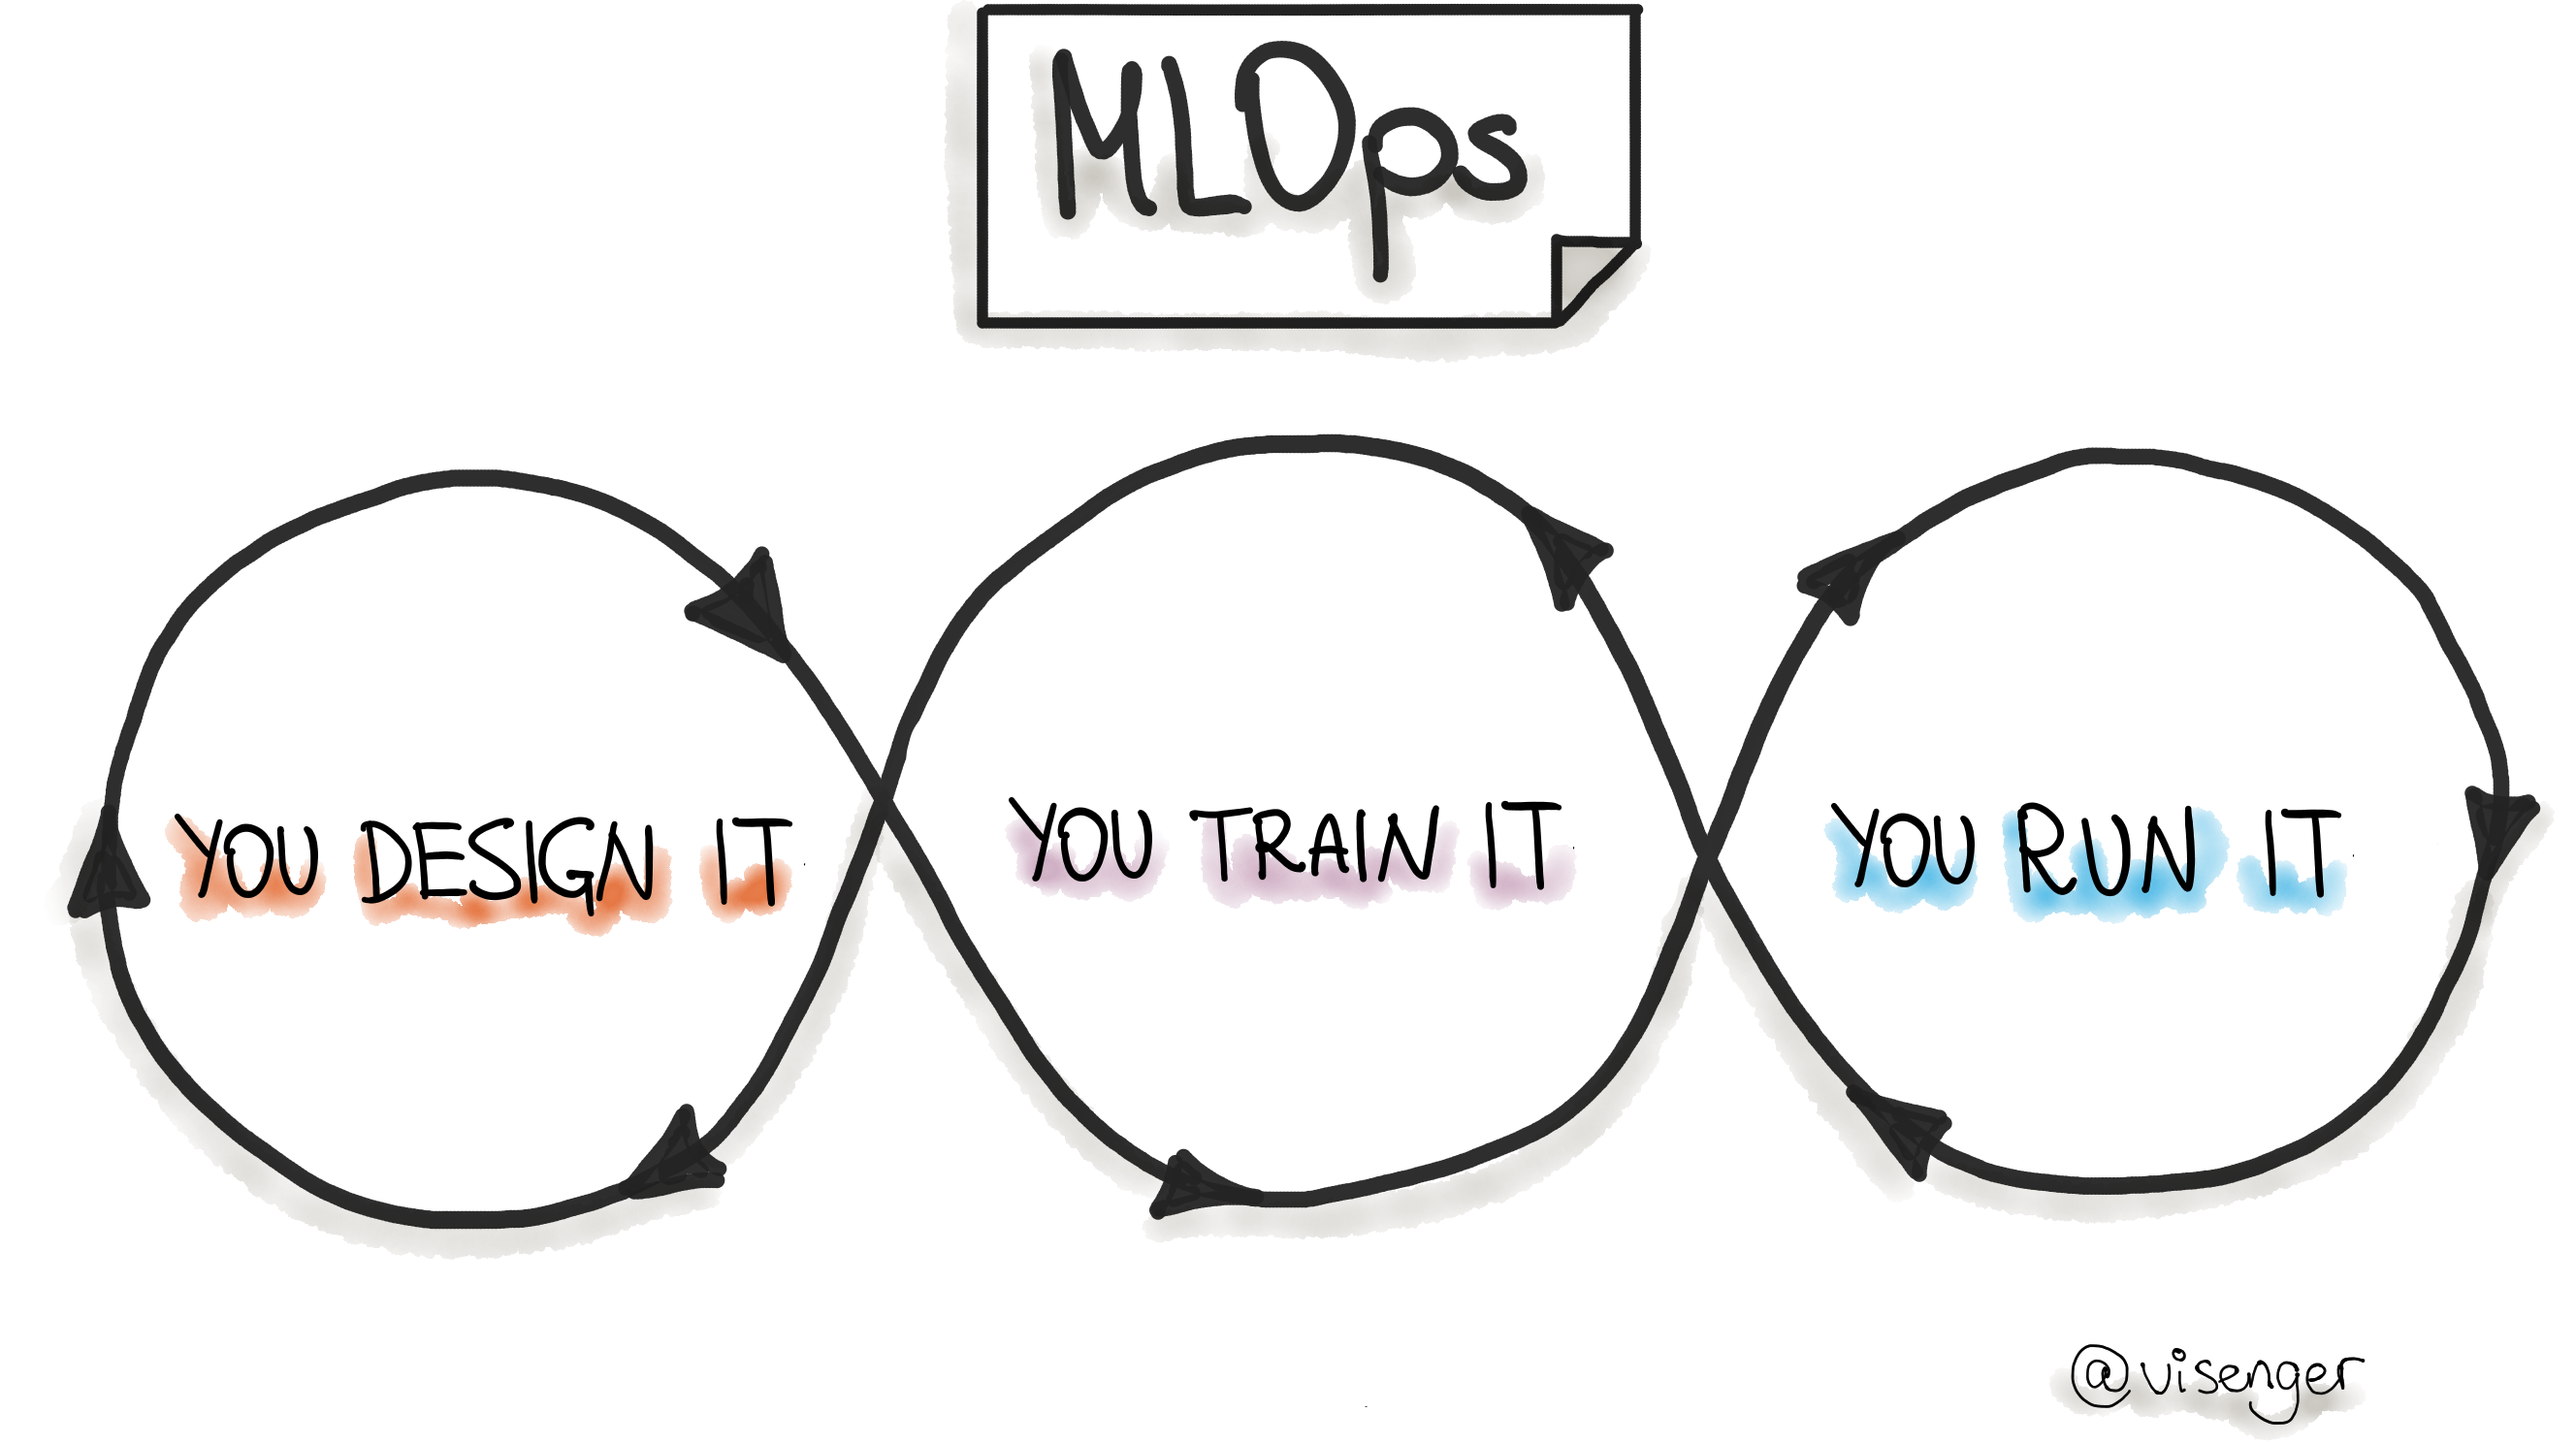 MLOps.あなたはそれを否定します。あなたの訓練をします。あなたはそれを実行します。